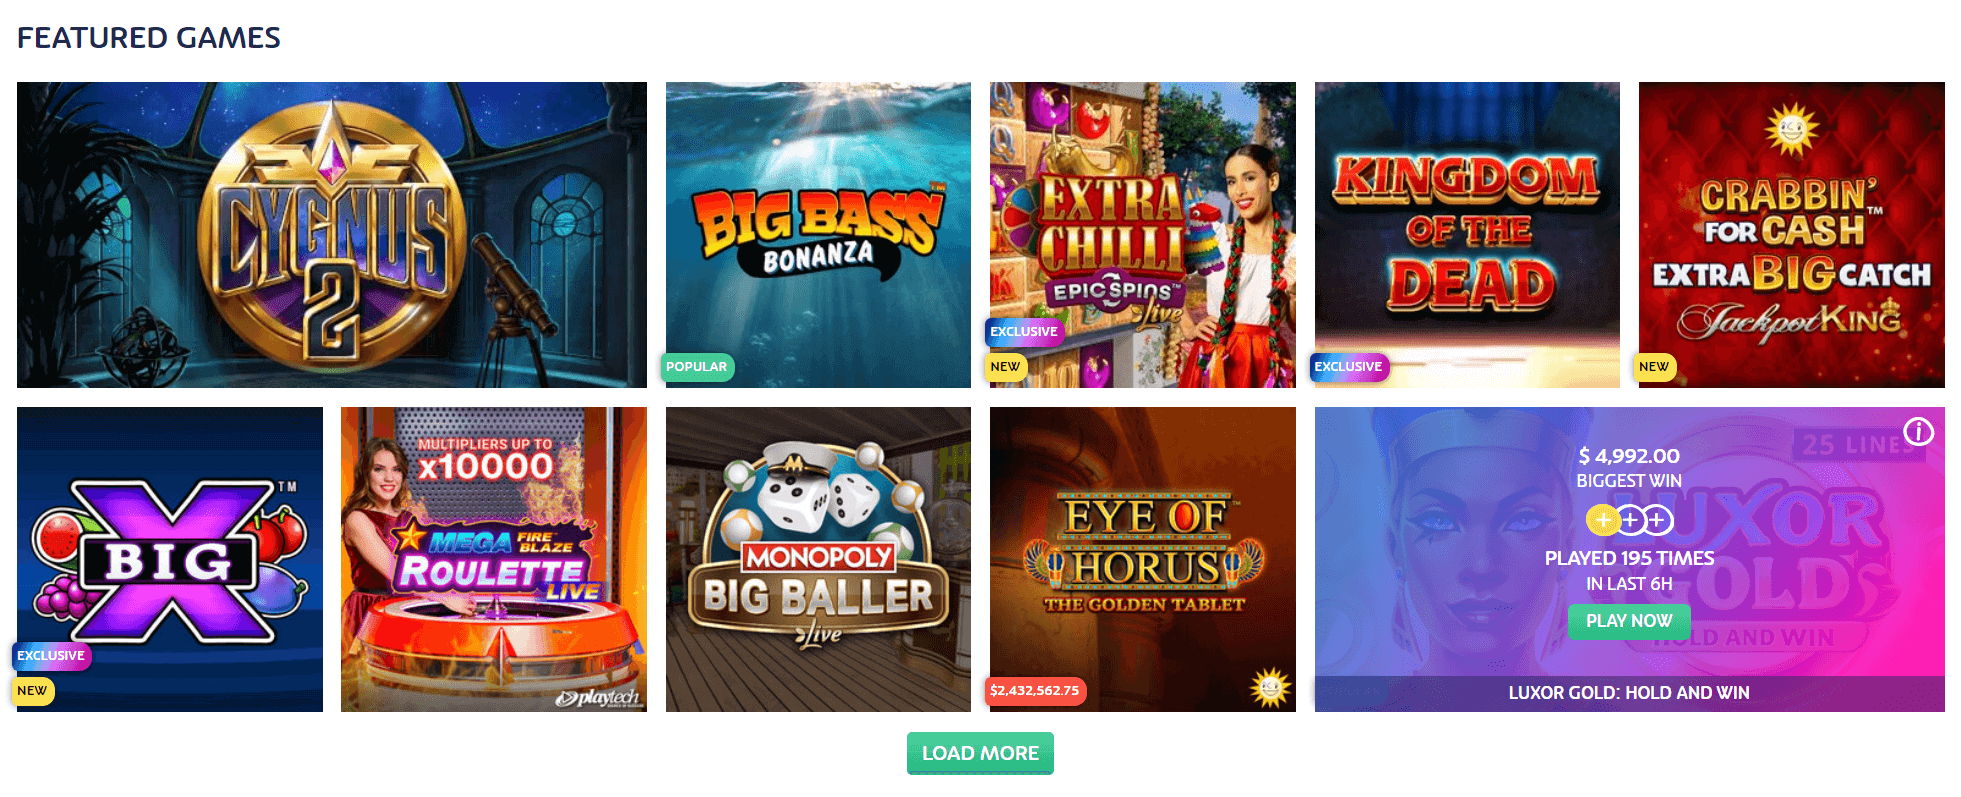 PlayOJO Casino Games